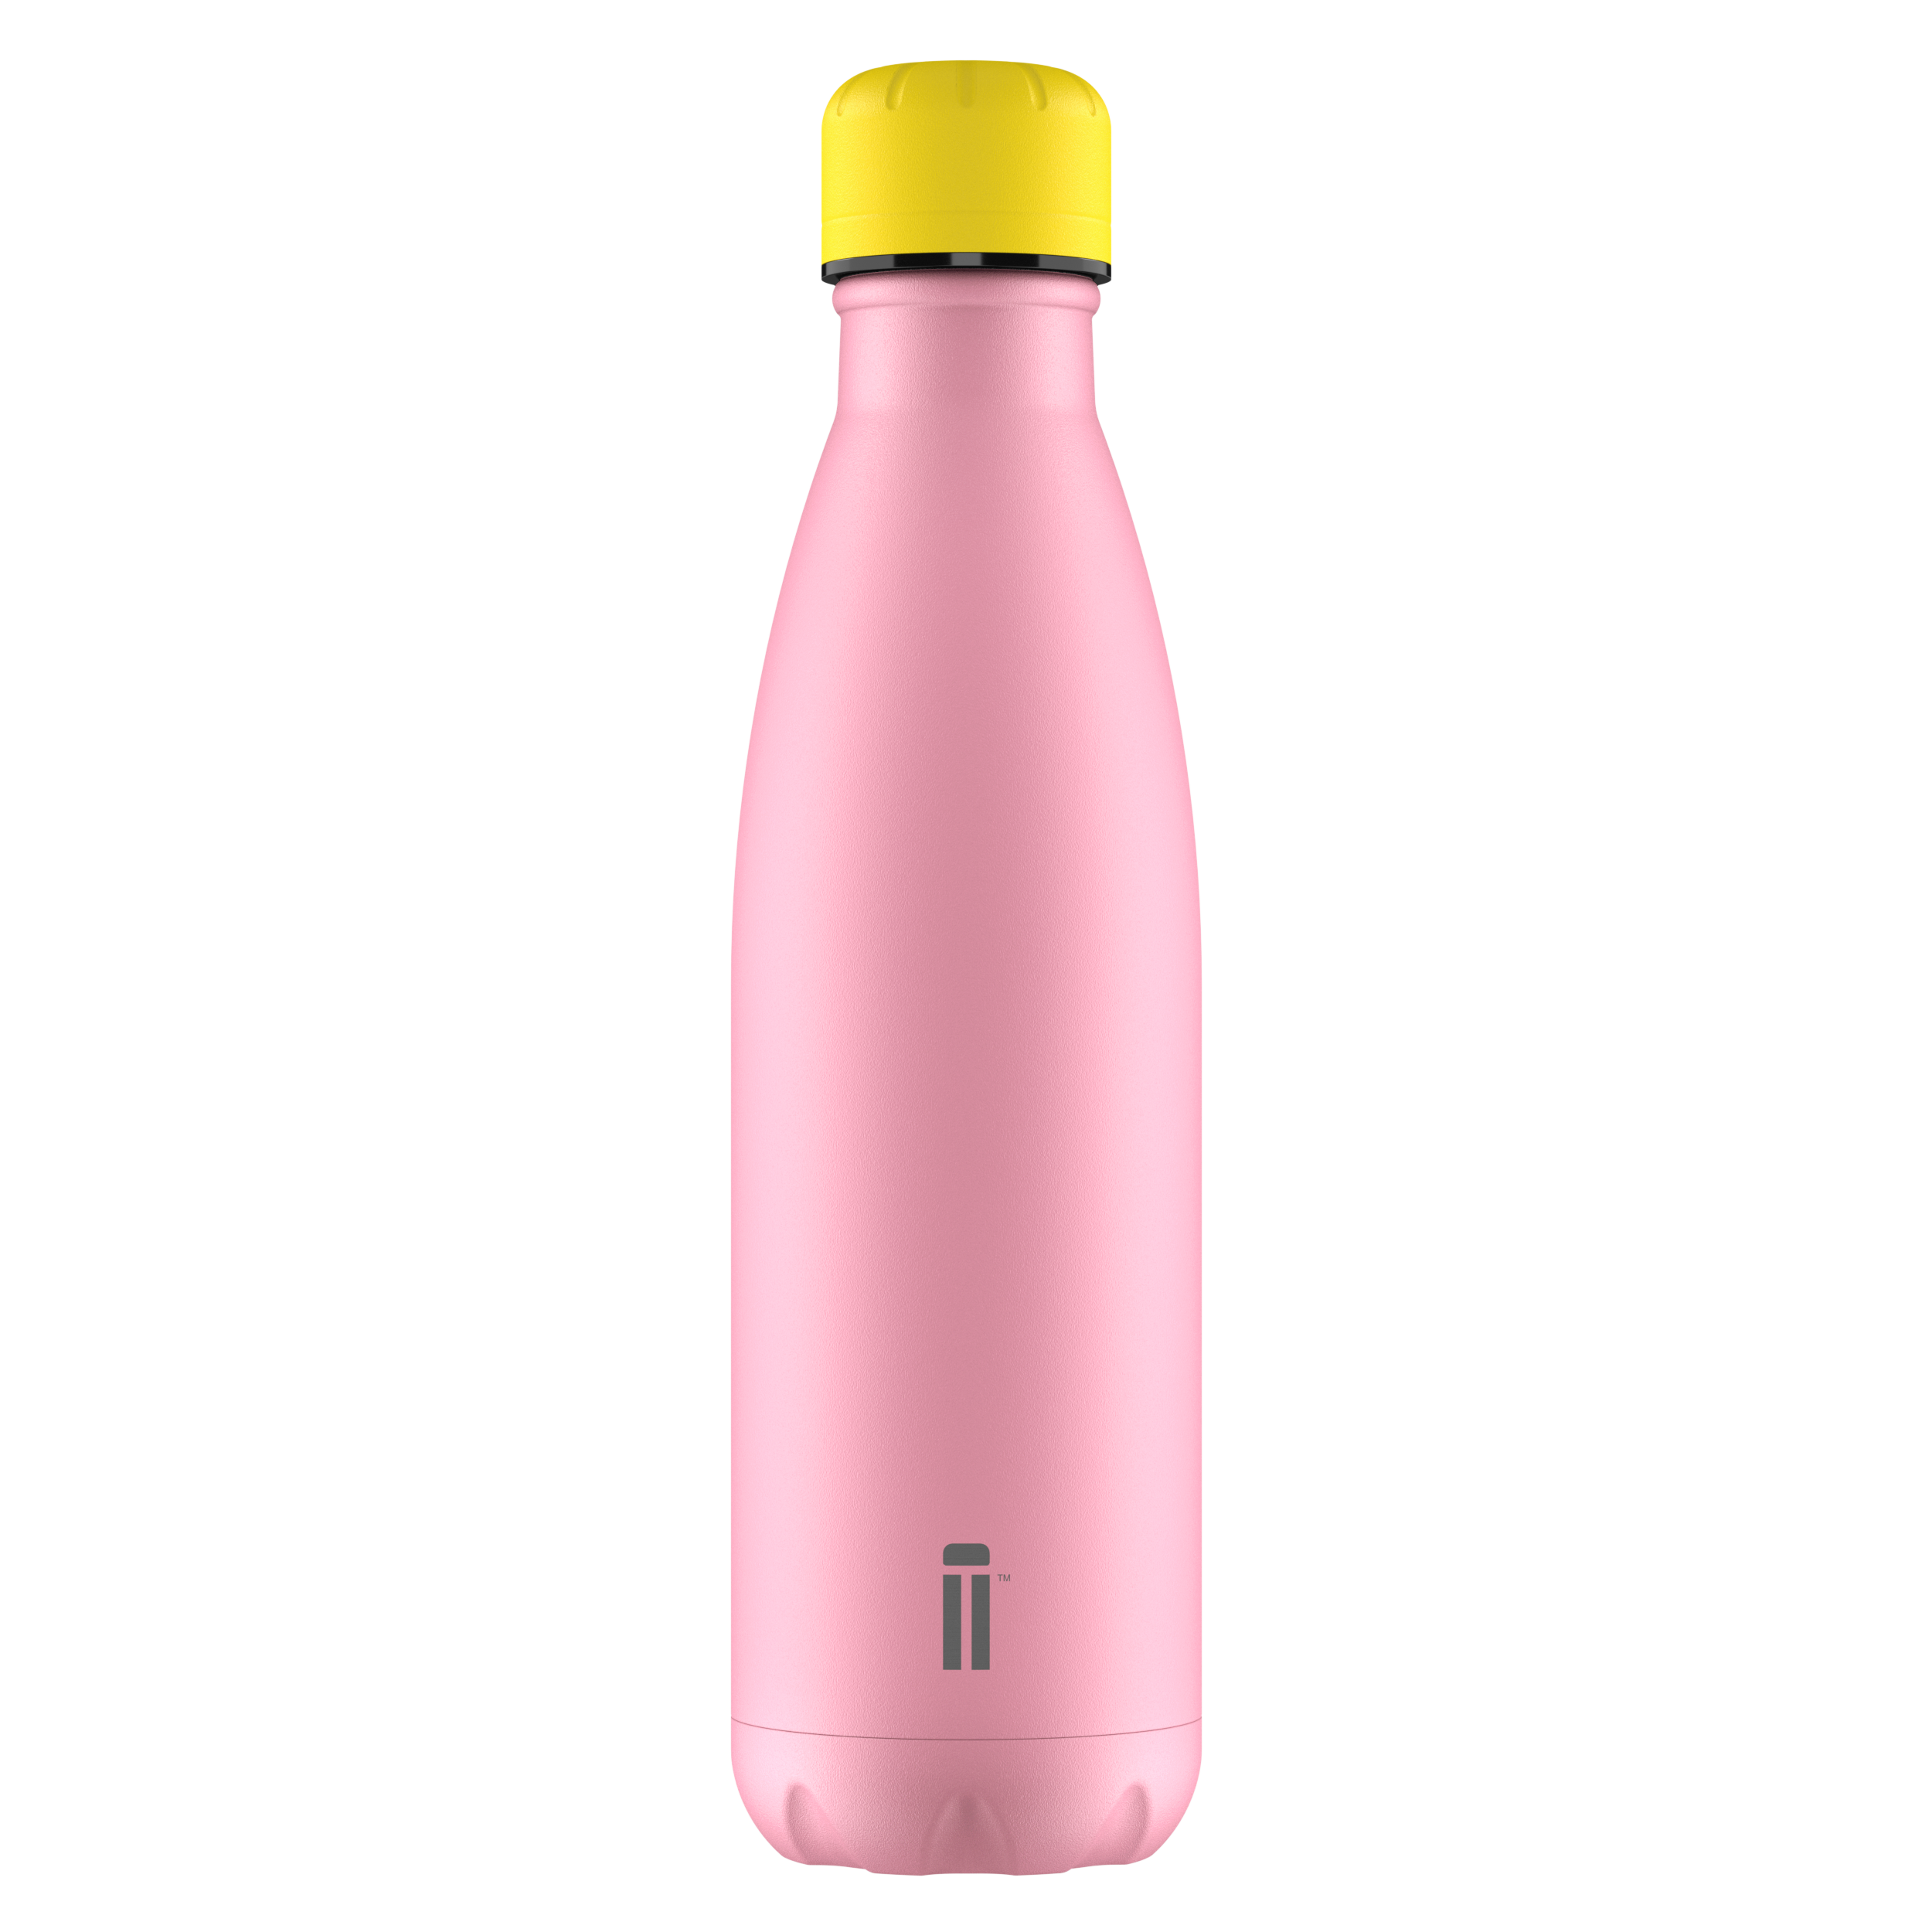 Sea Star Pink Water Bottle